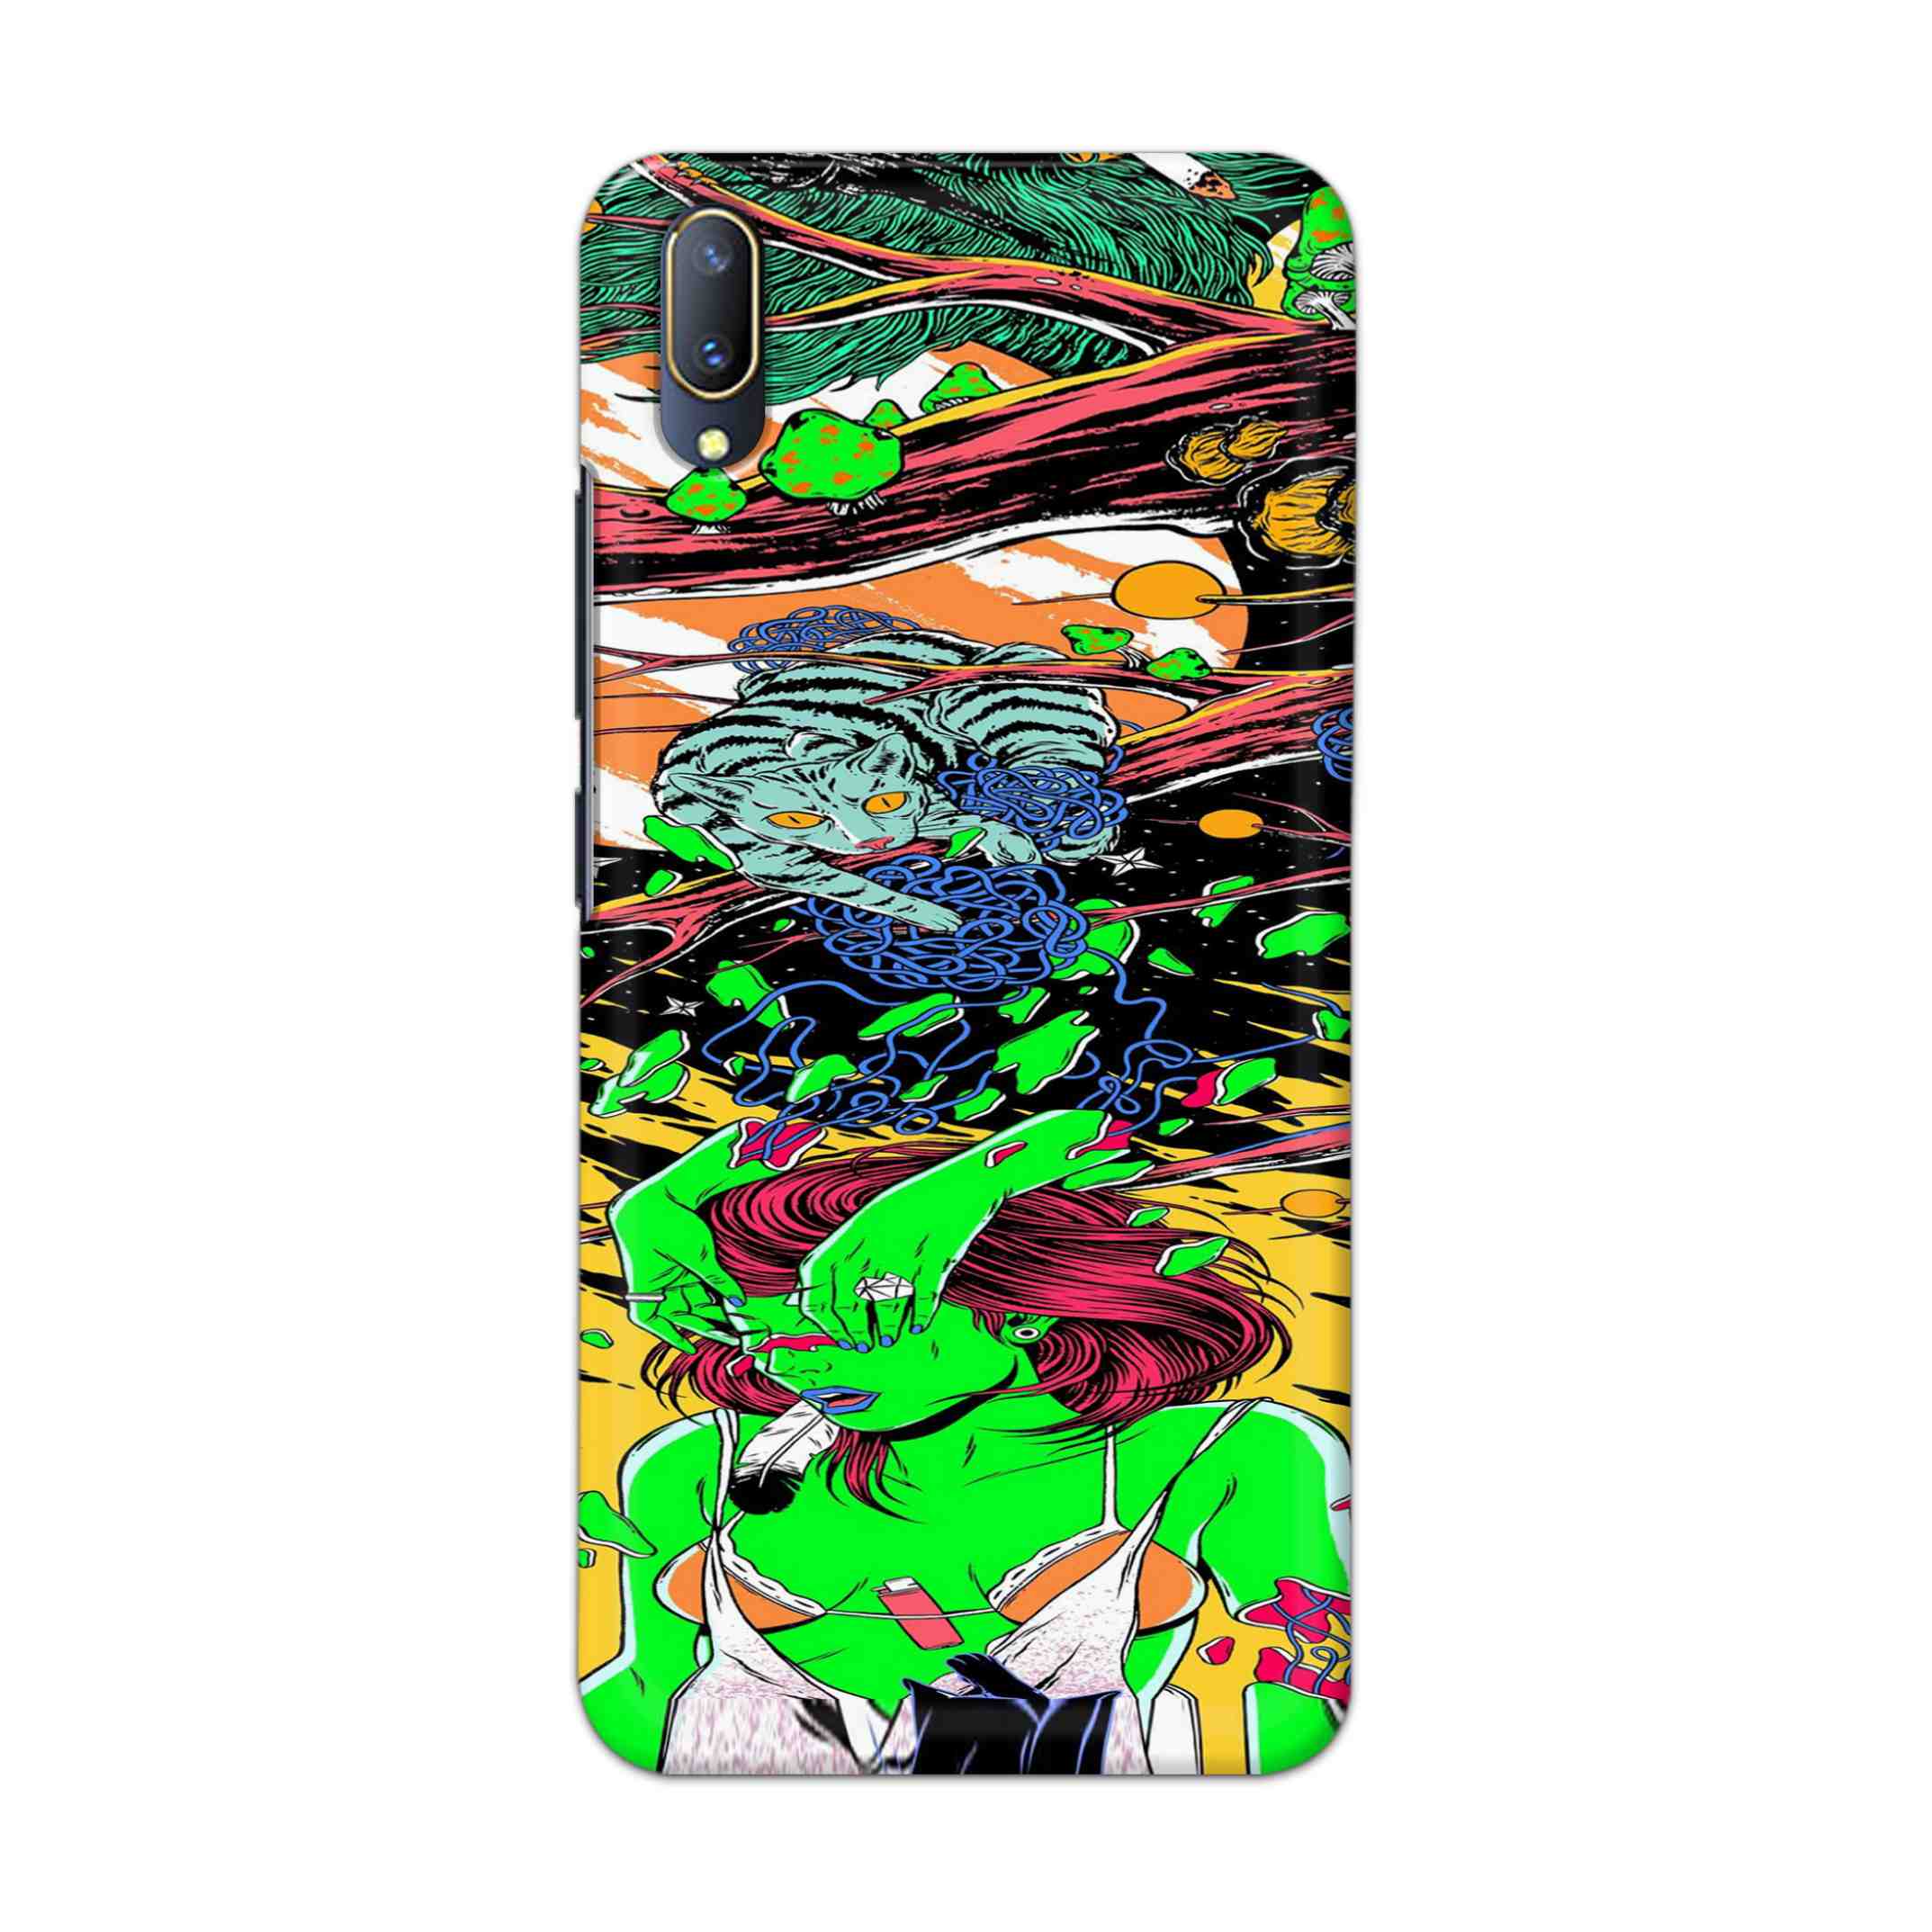 Buy Green Girl Art Hard Back Mobile Phone Case Cover For V11 PRO Online